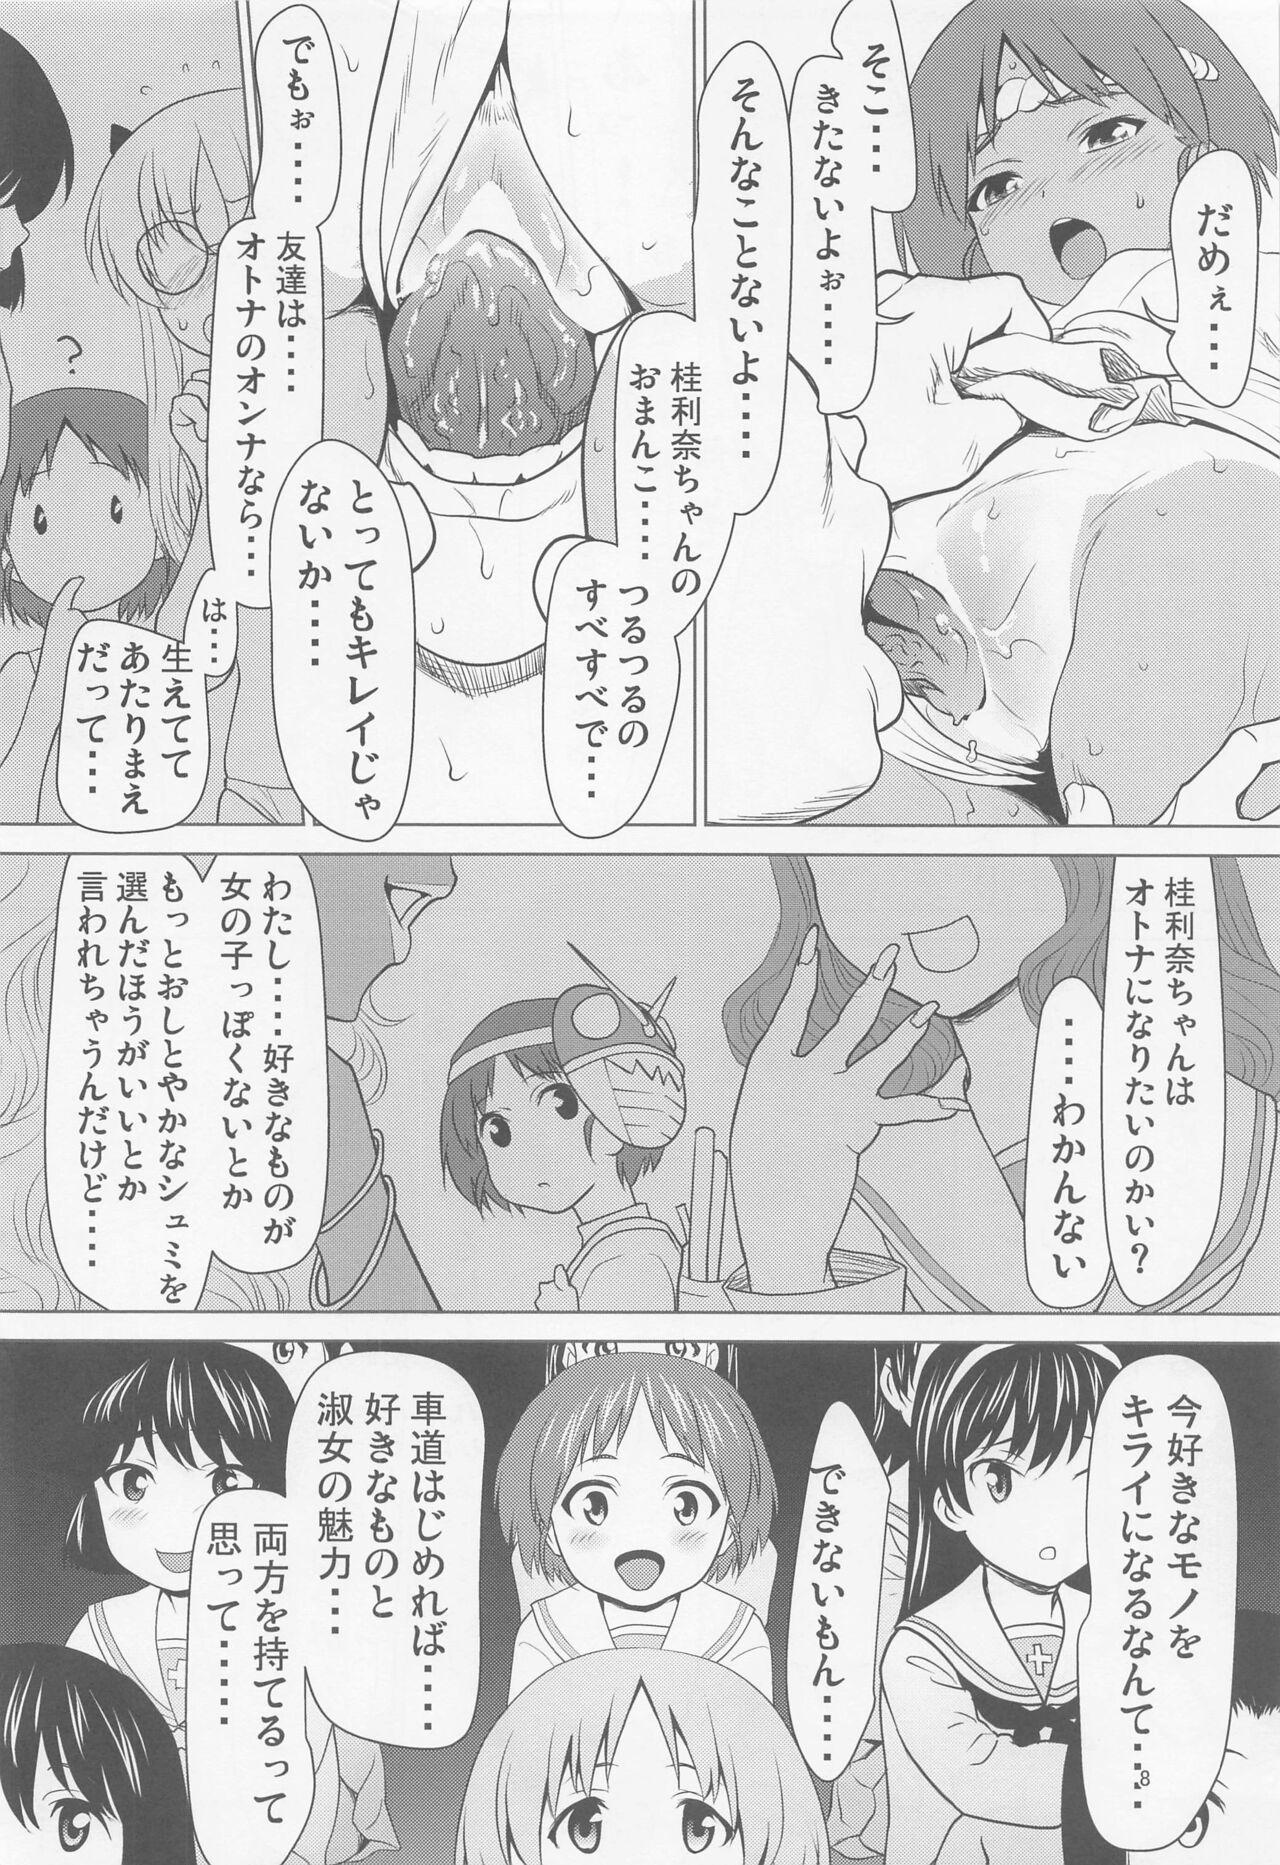 Lez Fuck hiyakefundoshinokarinachantomonokagede・・・・ Asian - Page 7